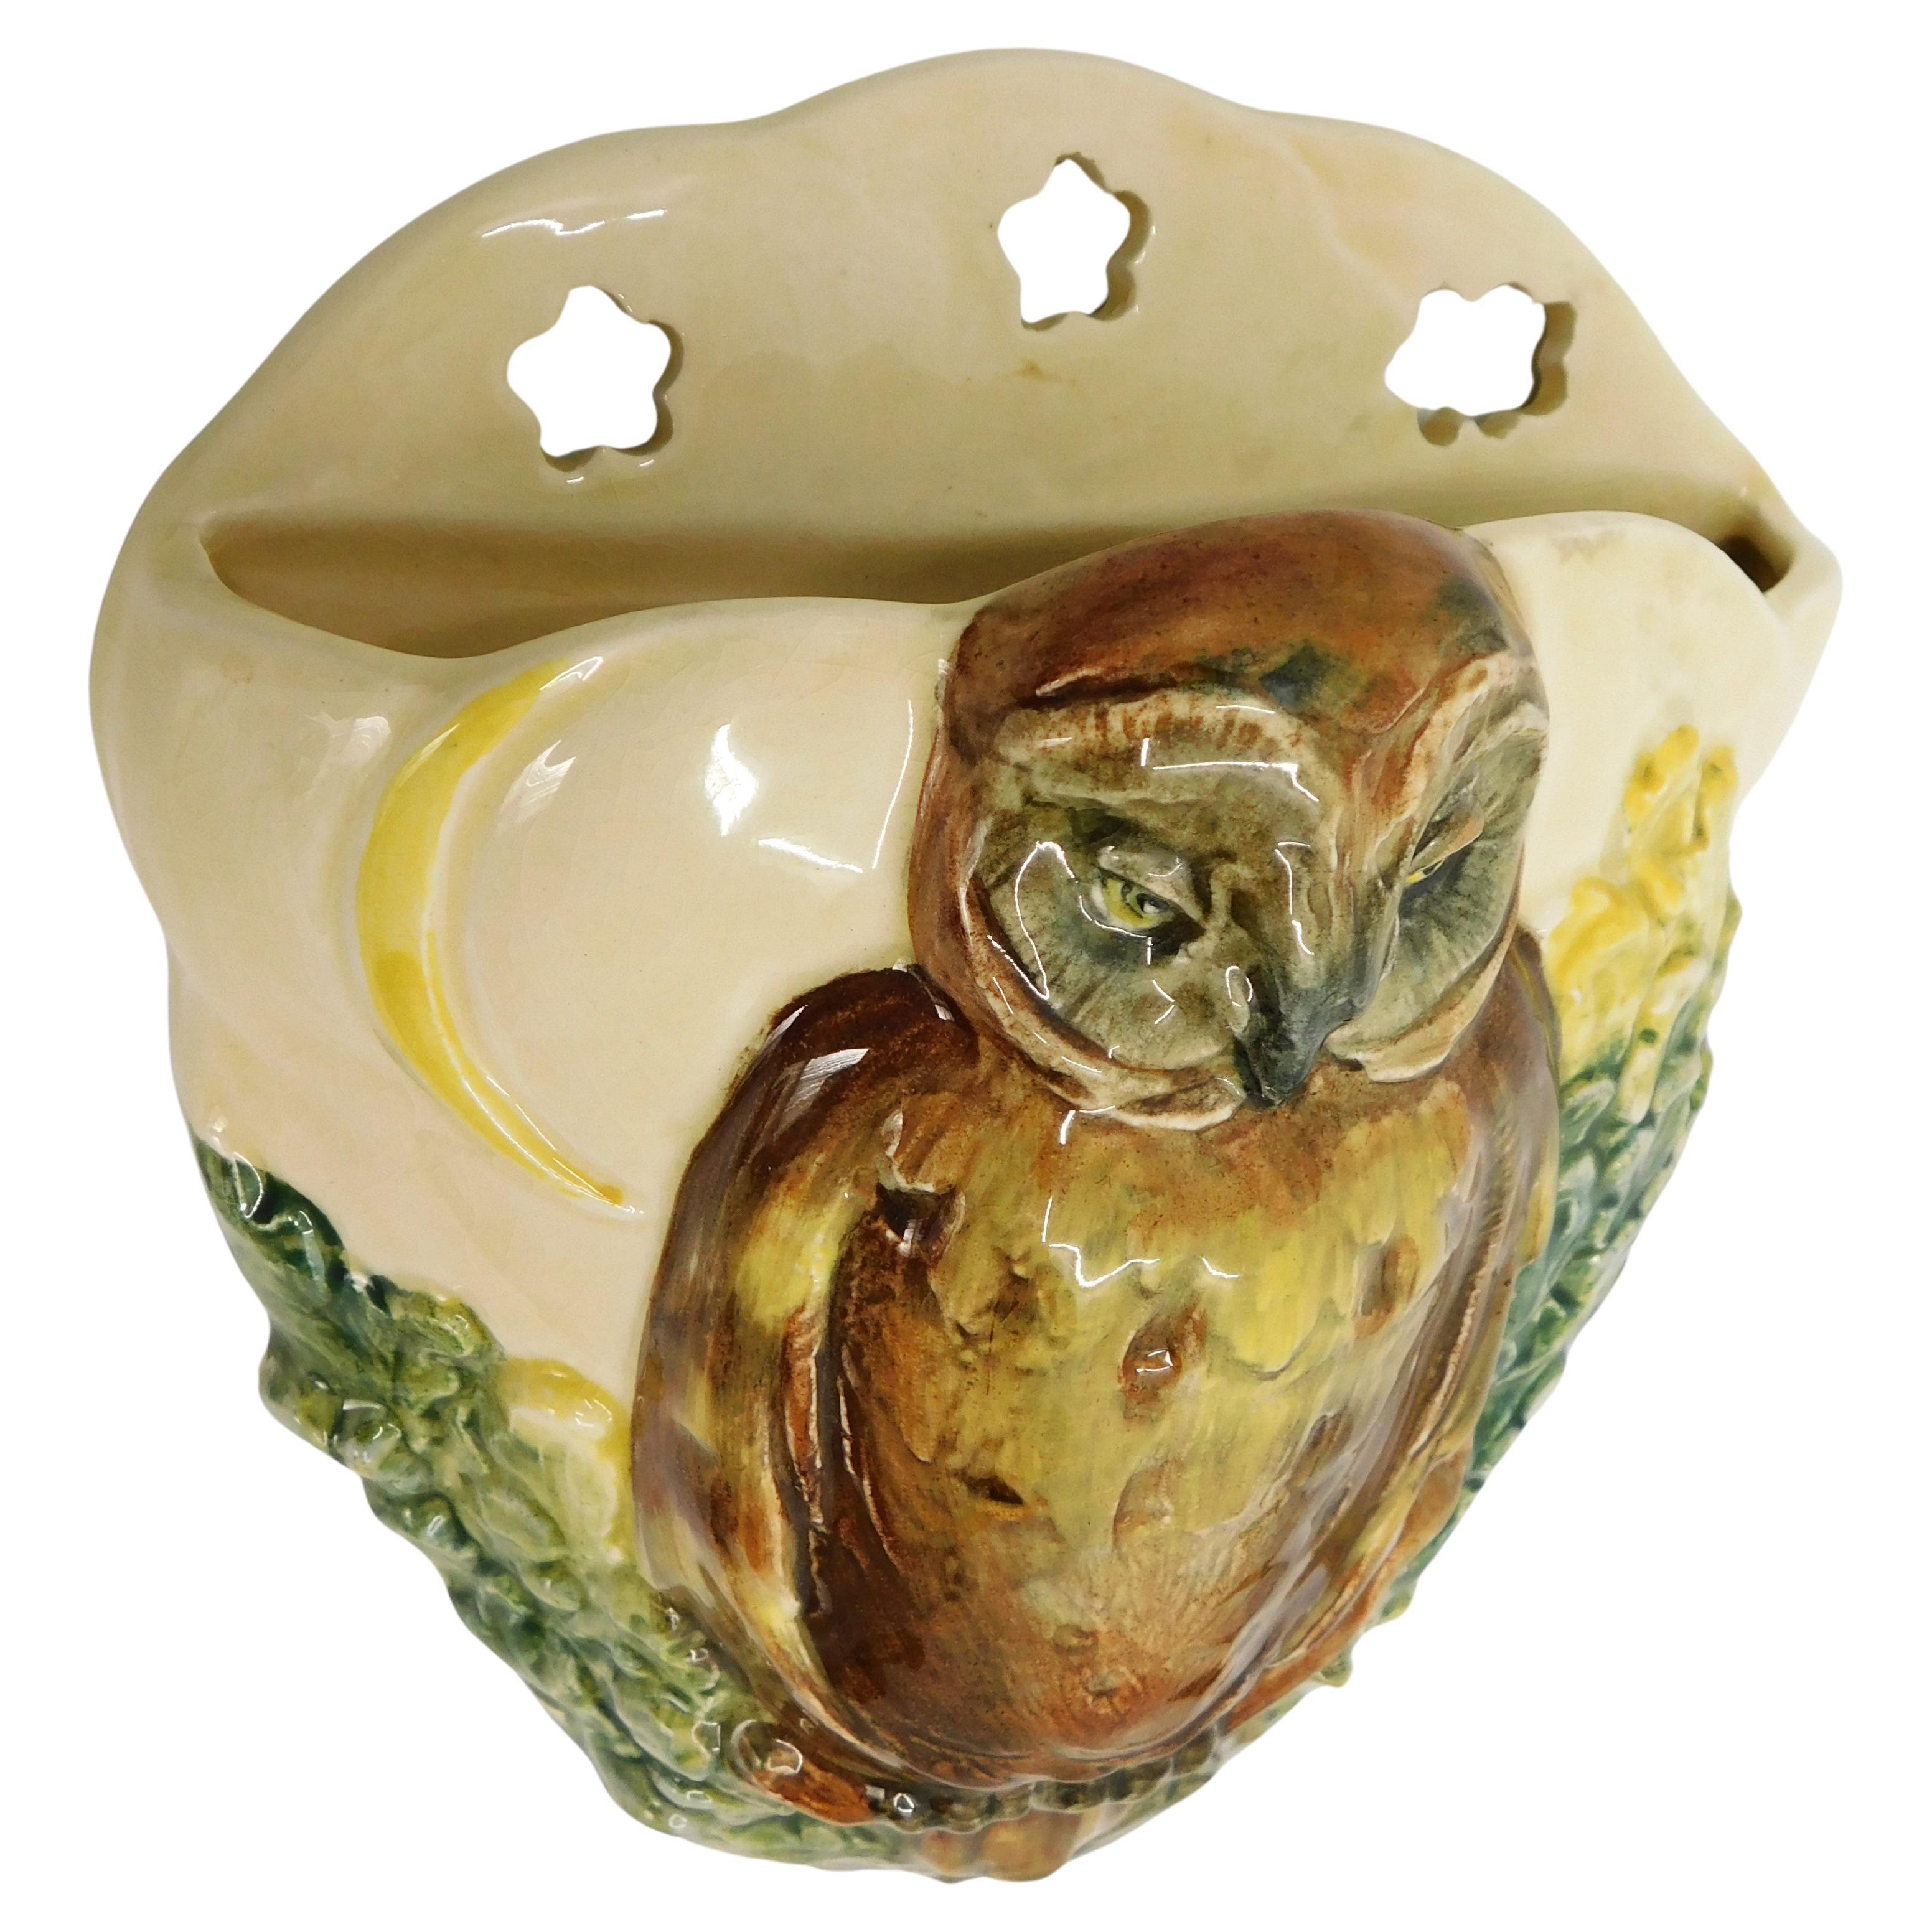 Circa 1930 Royal Doulton wall pocket vase Owl and Moon in high relief D5771 en très bon état made in England.

Pochettes et vases muraux Royal Doulton (Angleterre) ;
L'usine Doulton a été créée en 1815 à Lambeth, dans le sud de Londres, par John